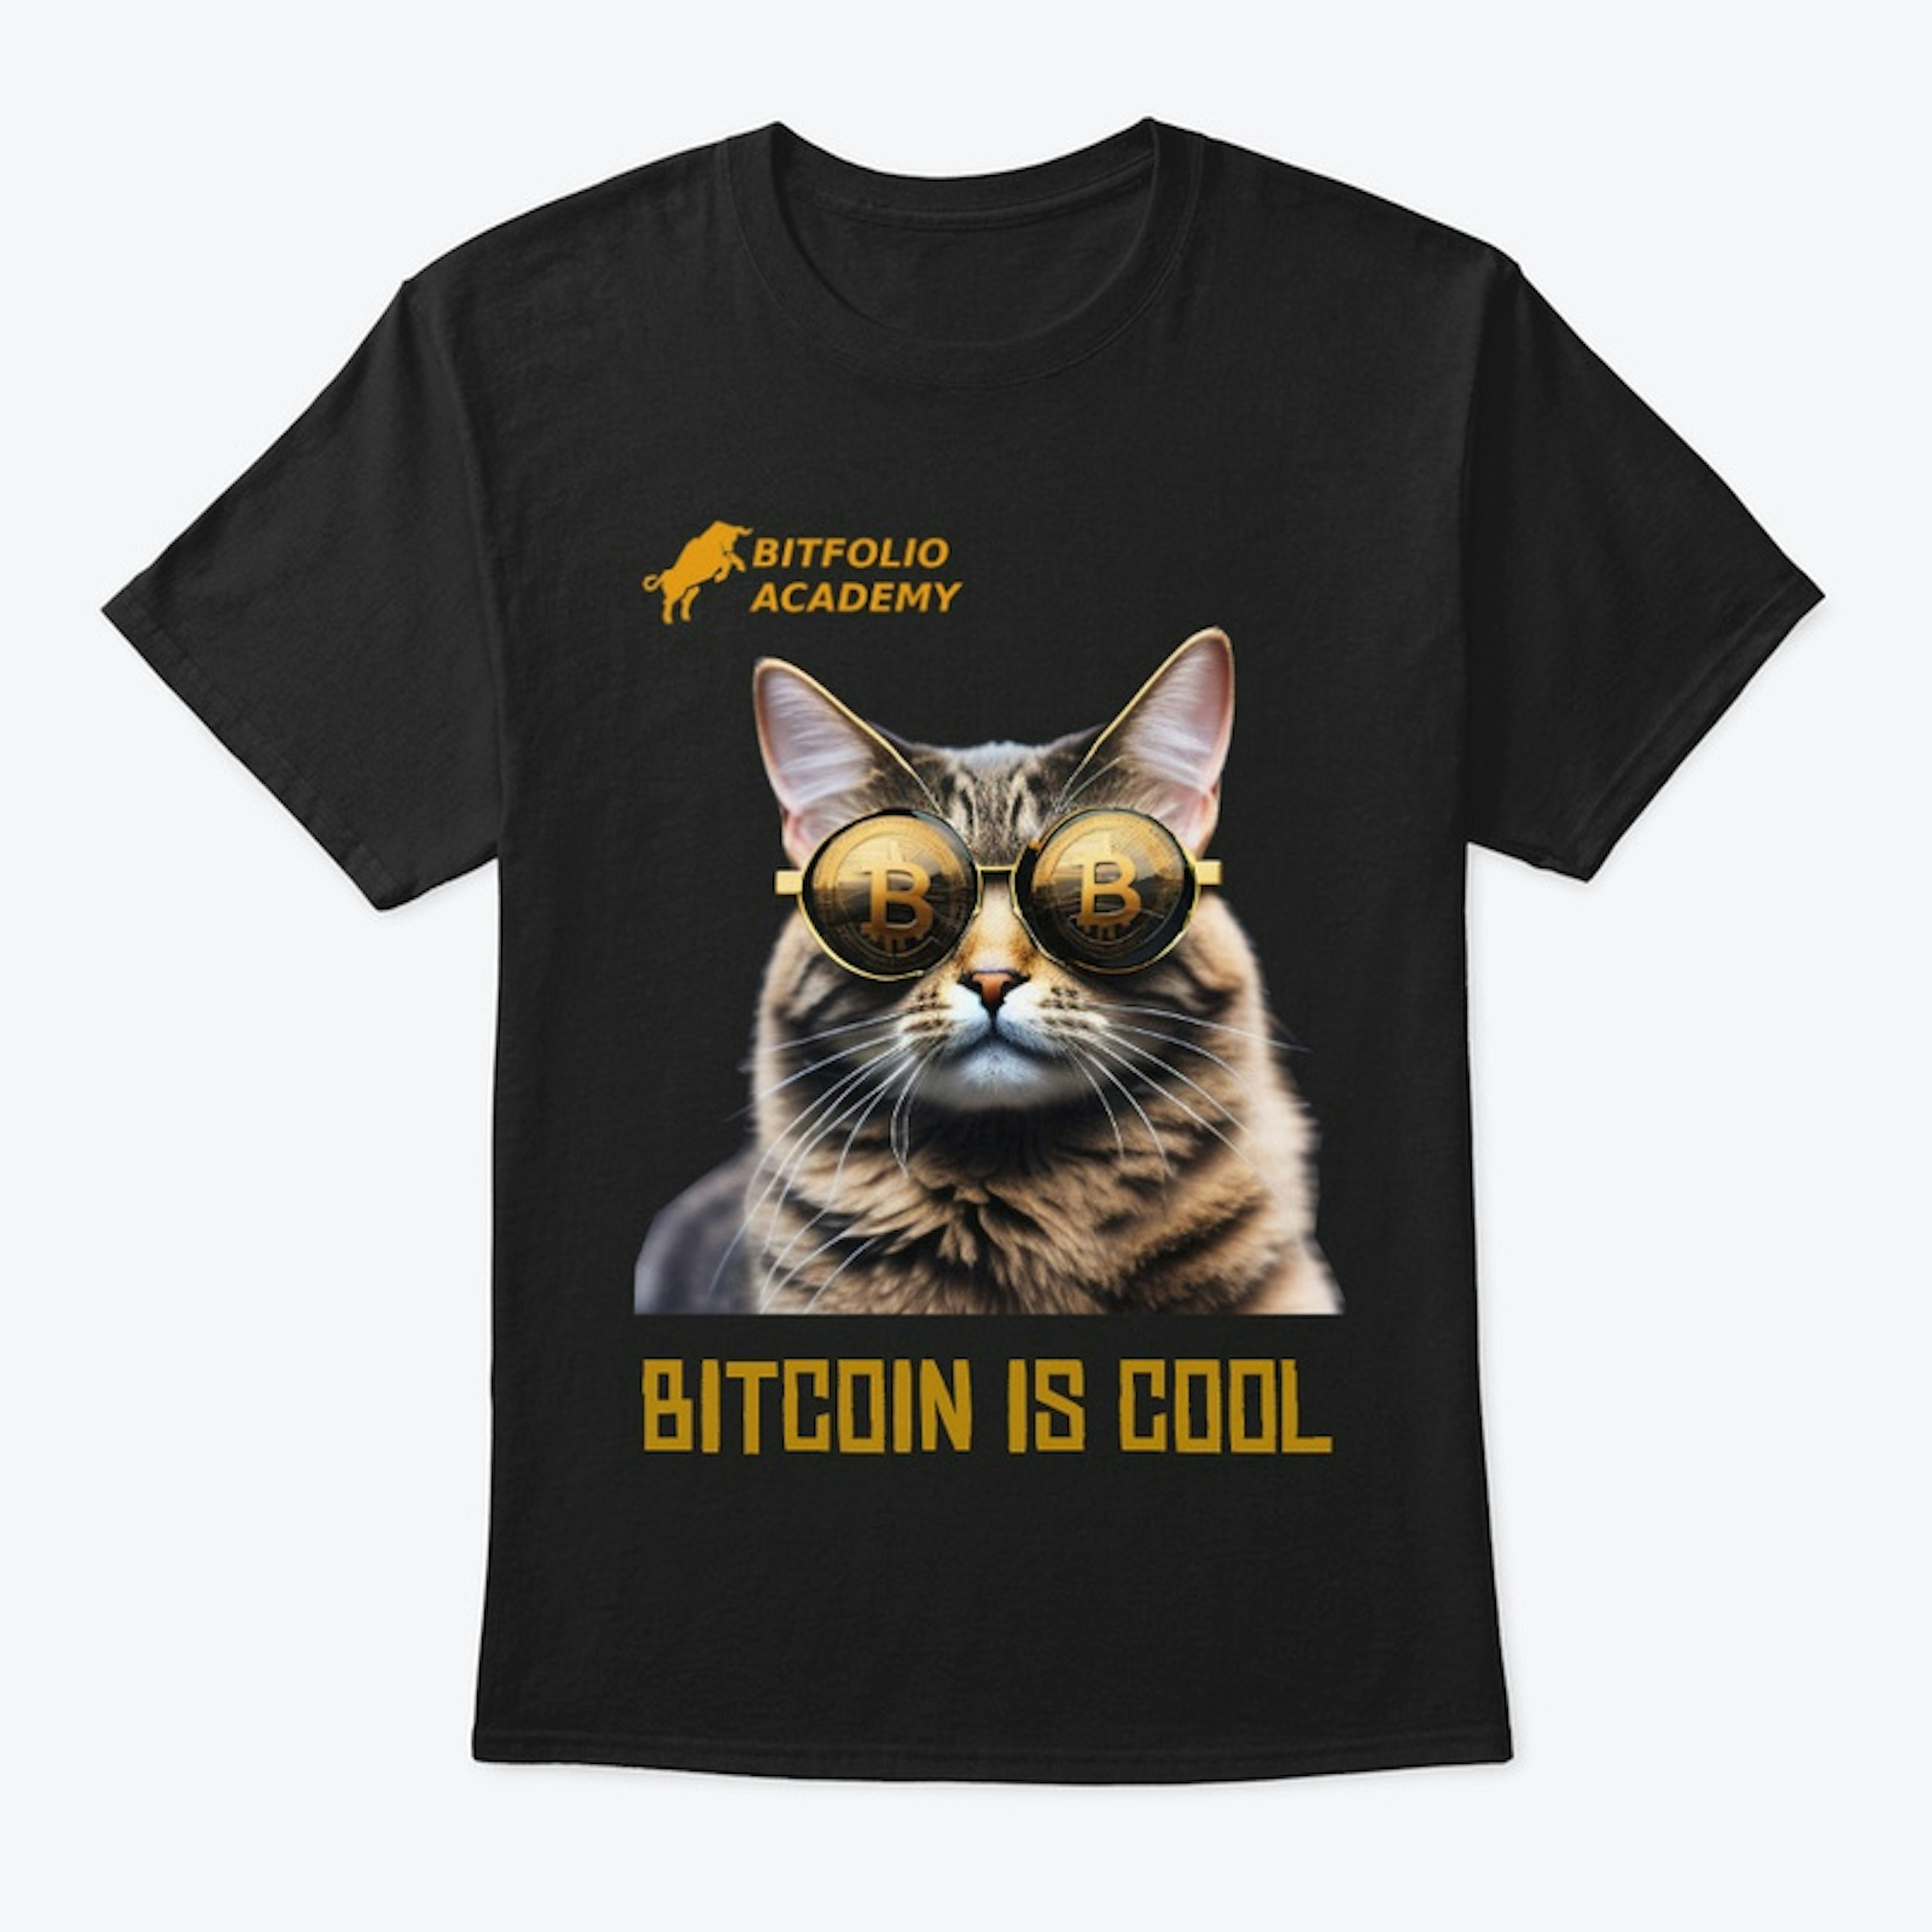 Join the Bitcoin Feline Club